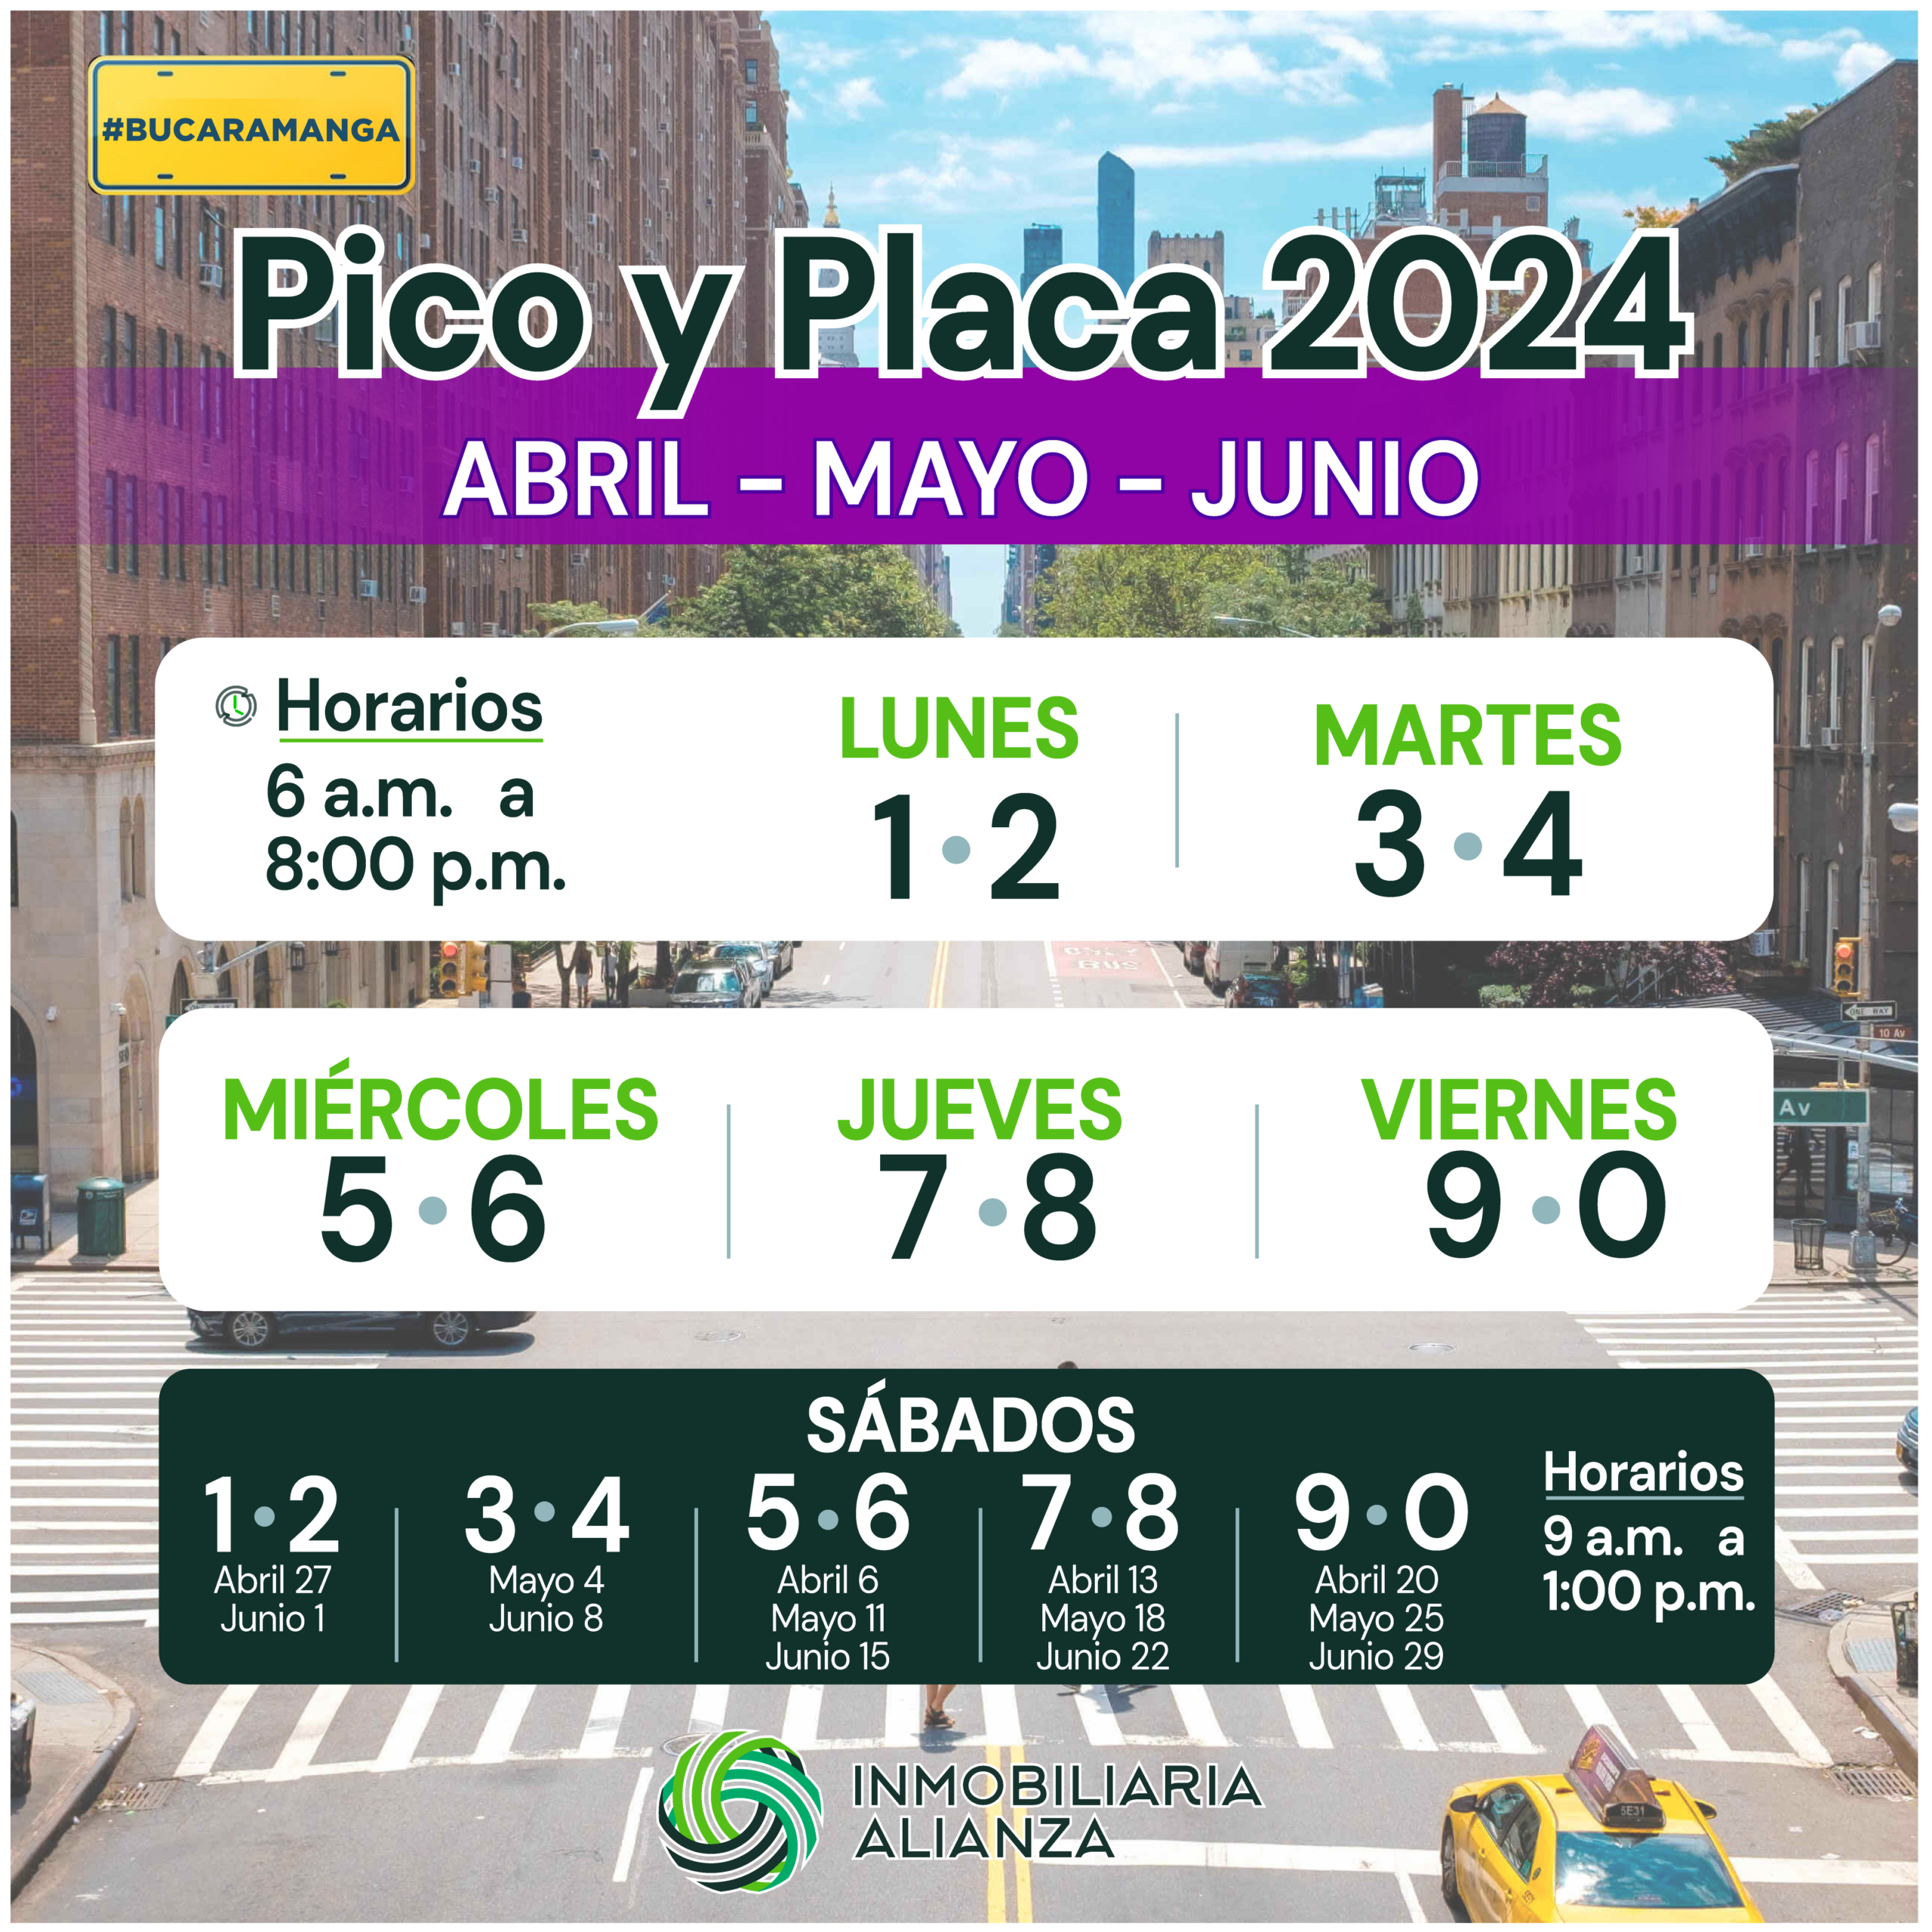 Nuevo Pico y placa en el Área Metropolitana de Bucaramanga, Abril a Junio.